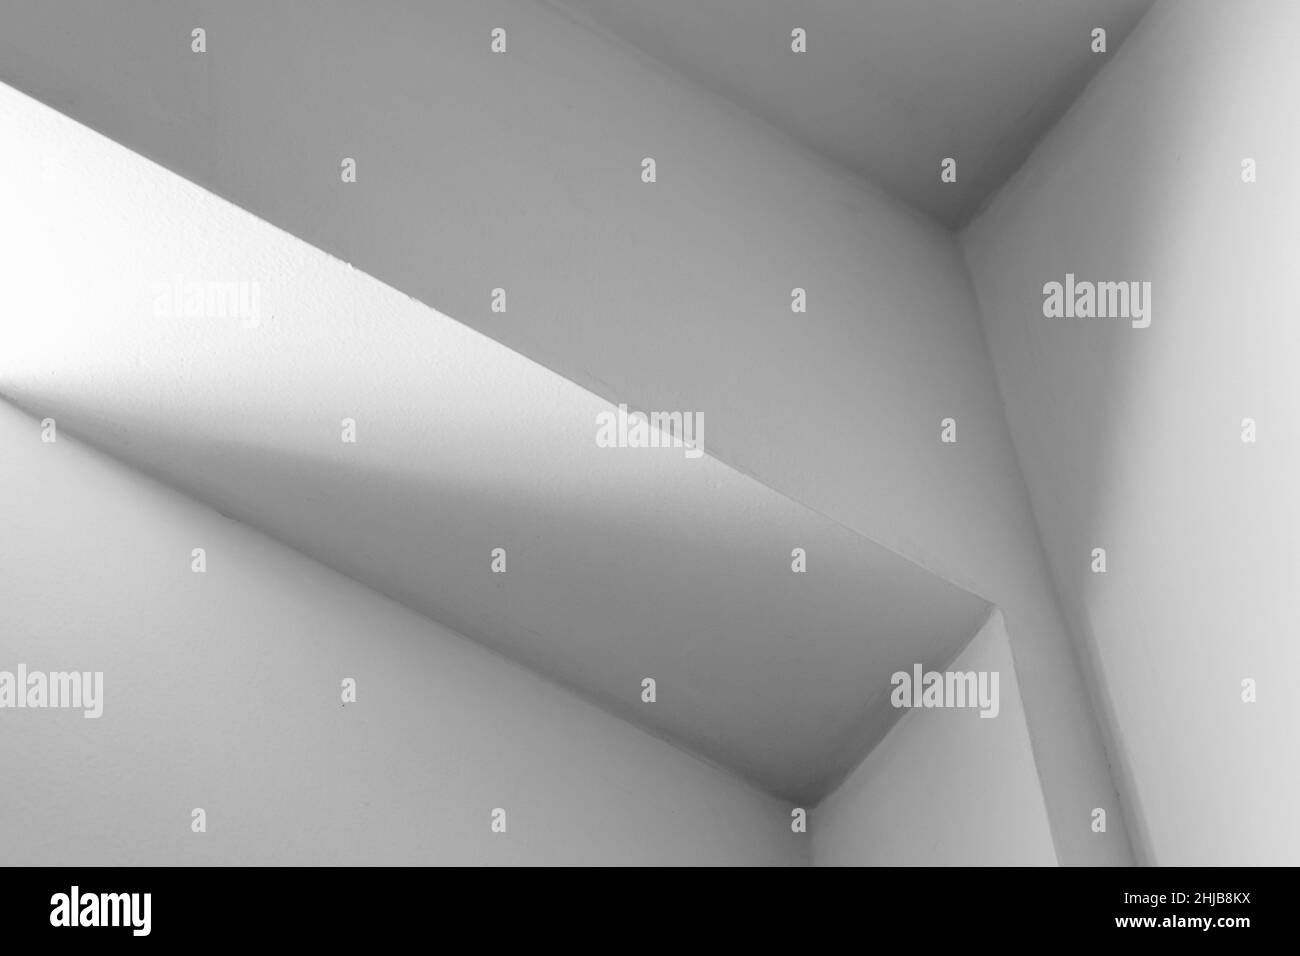 Astratto bianco minimalista fondo fotografico interno, frammento con connessione travi a soffitto Foto Stock